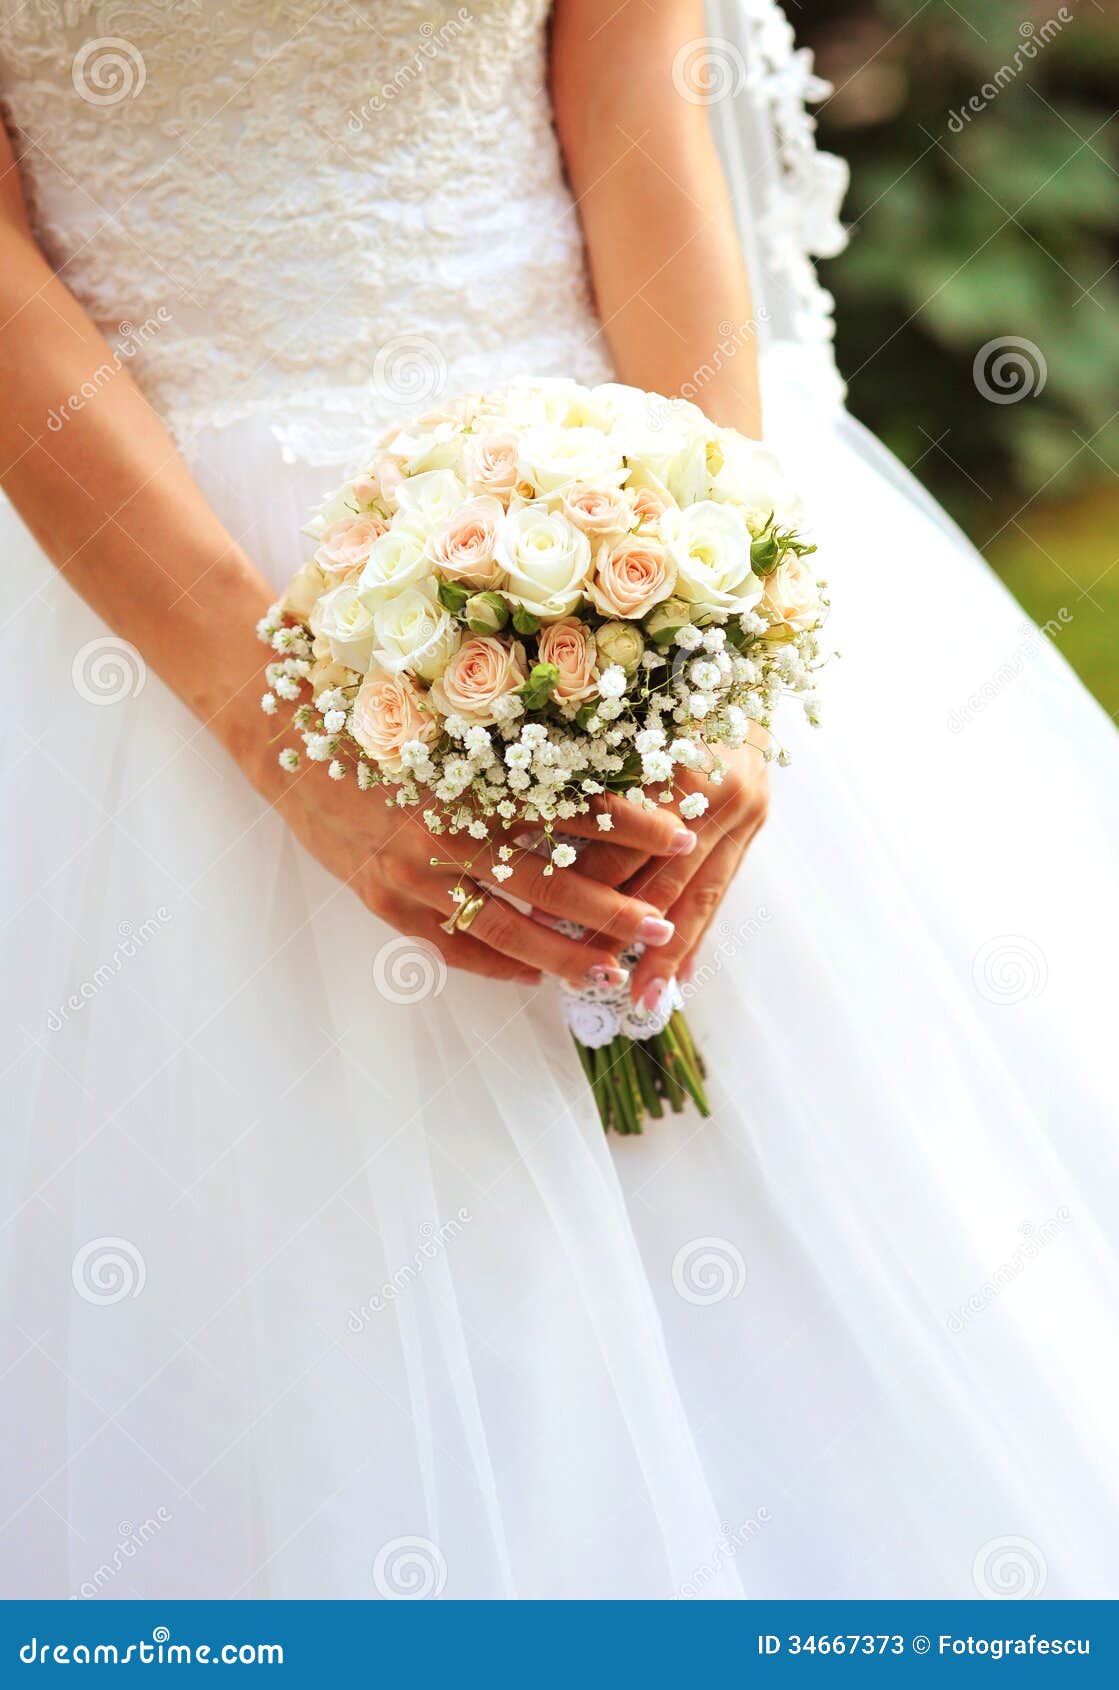 Bride Holding Wedding Flowers Stock Image - Image of decoration ...